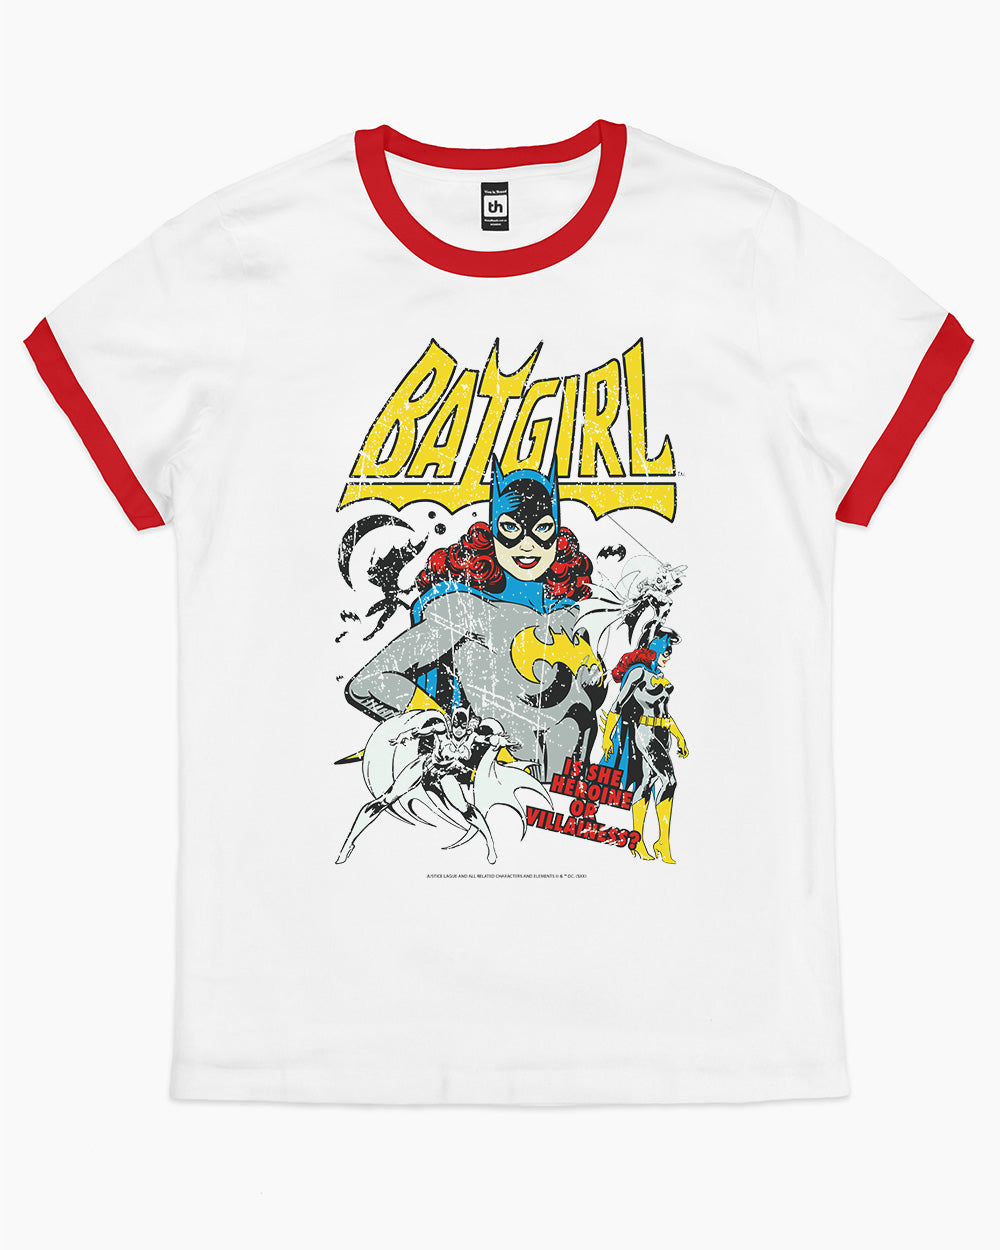 Batgirl Heroine T-Shirt Australia Online #colour_red ringer